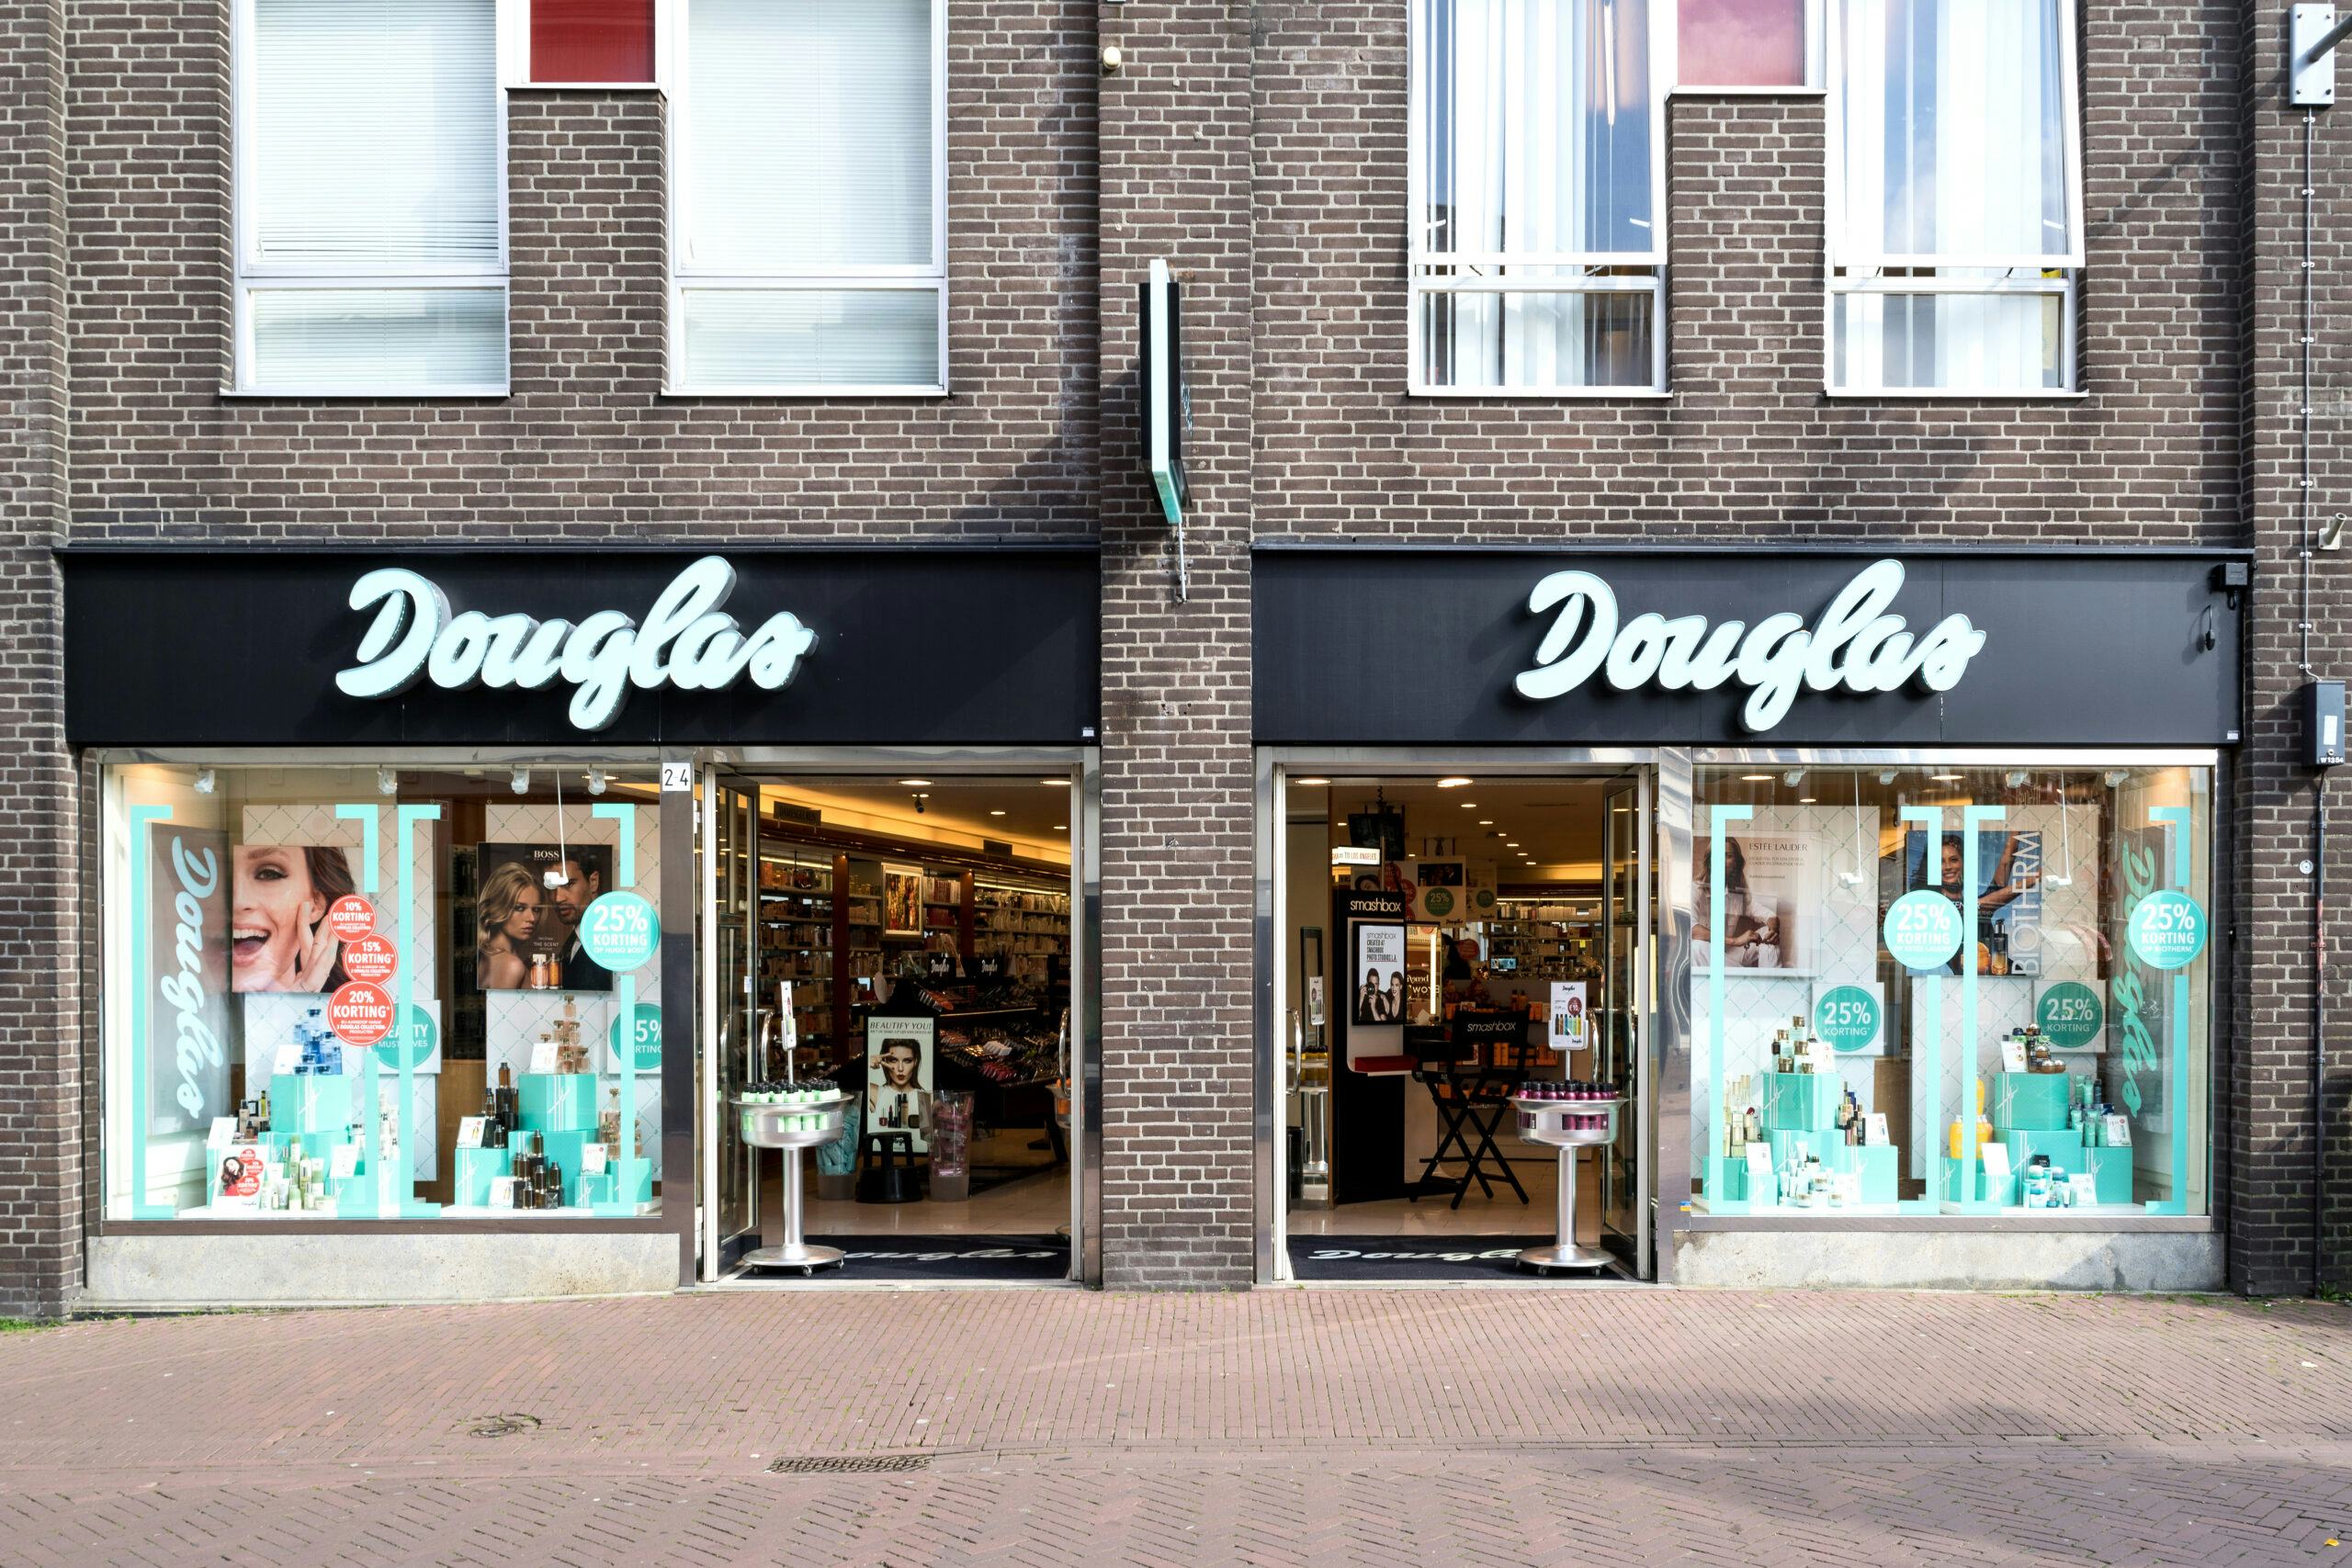 Vollere winkelstraten stuwen omzet parfumketen Douglas